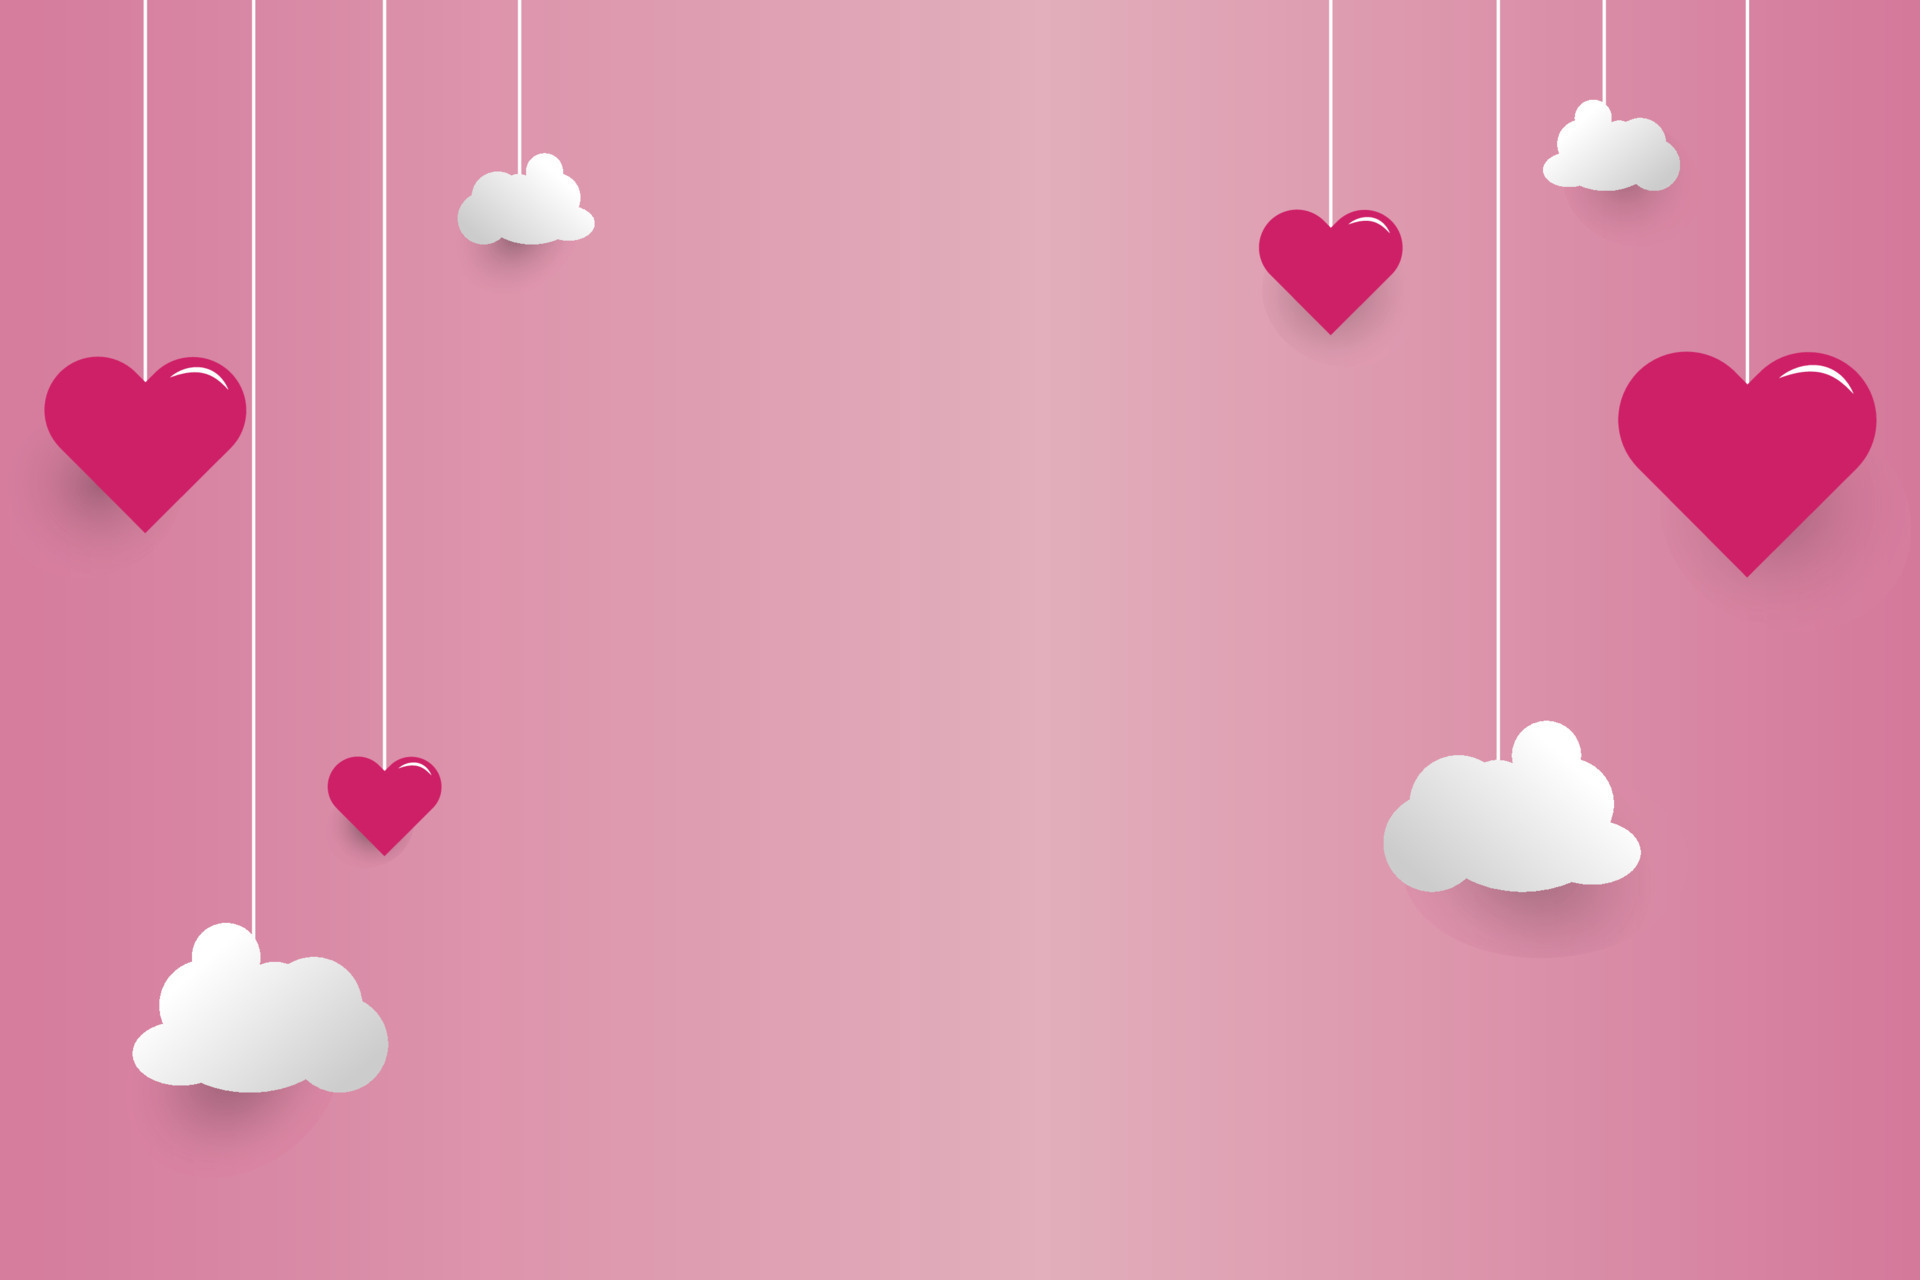 Nền hồng với hình trái tim vector: Bạn đang muốn thêm màu sắc và tình cảm vào bữa tiệc sinh nhật của mình? Hãy sử dụng nền hình màu hồng tươi với hình trái tim vector để tạo ra bầu không khí tình yêu và lãng mạn cho bữa tiệc của bạn.